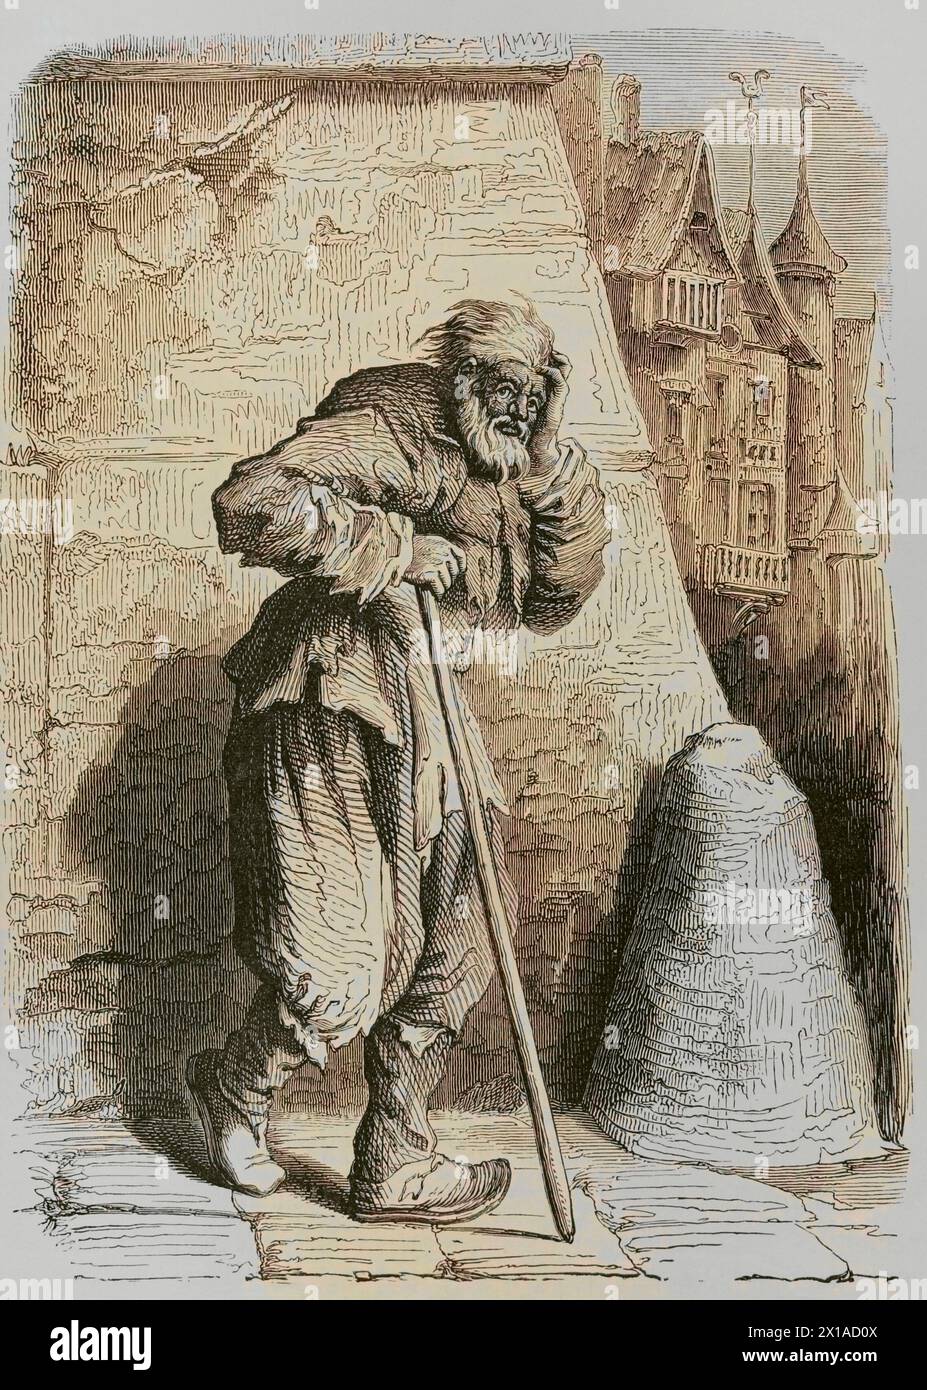 Italian Beggar. Facsimile from an engraving by Jacques Callot (1592-1635). Later colouration. "Moeurs, usages et costumes au moyen-âge et à l'époque de la Renaissance", by Paul Lacroix. Paris, 1878. Stock Photo